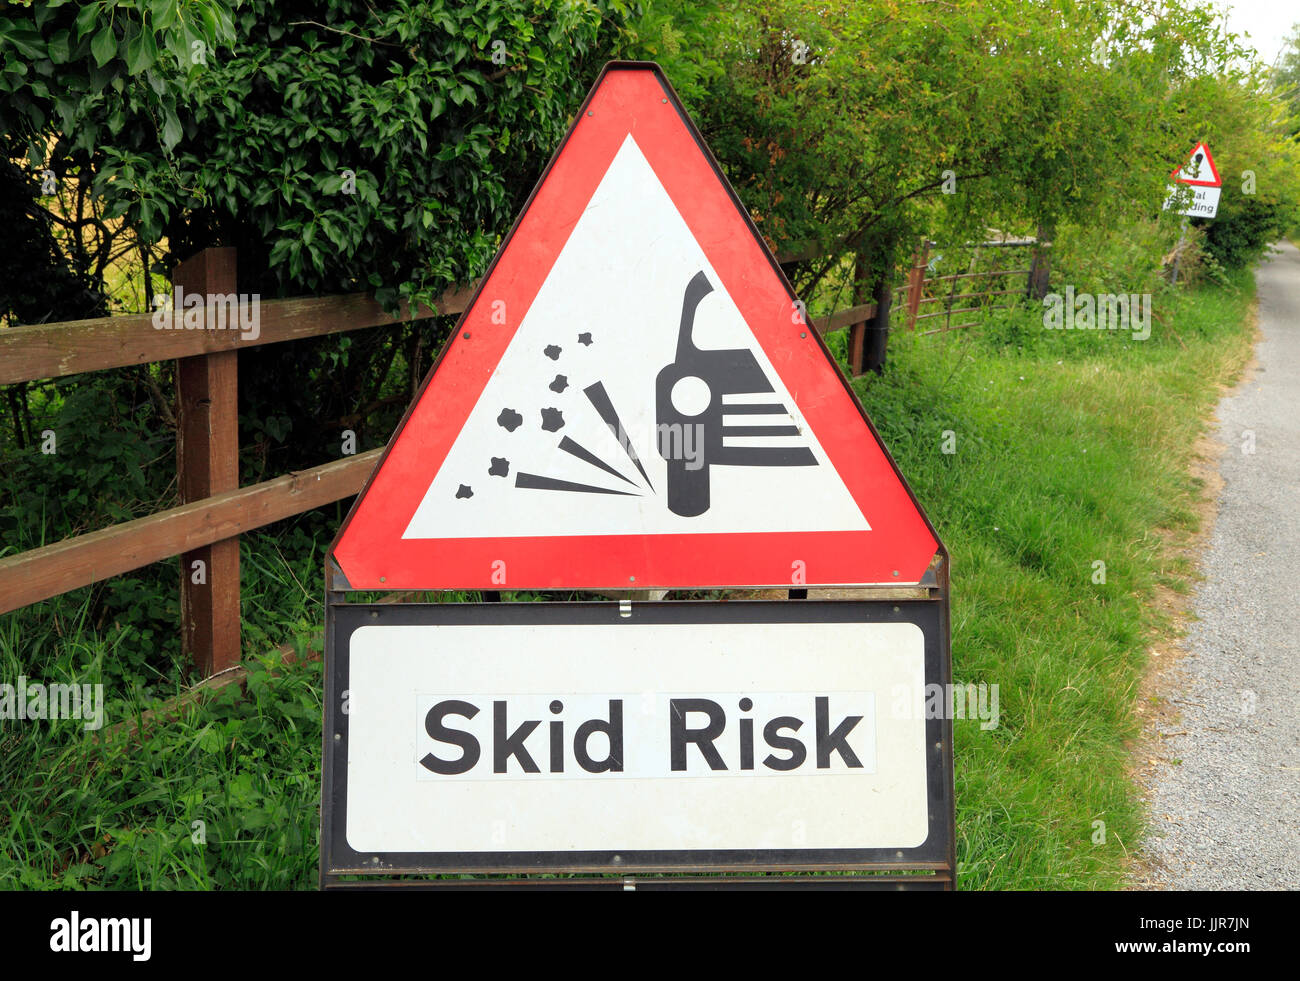 Risque de dérapage, automobiliste, avertissement, England, UK, anglais roadside, mises en garde, des signes Banque D'Images